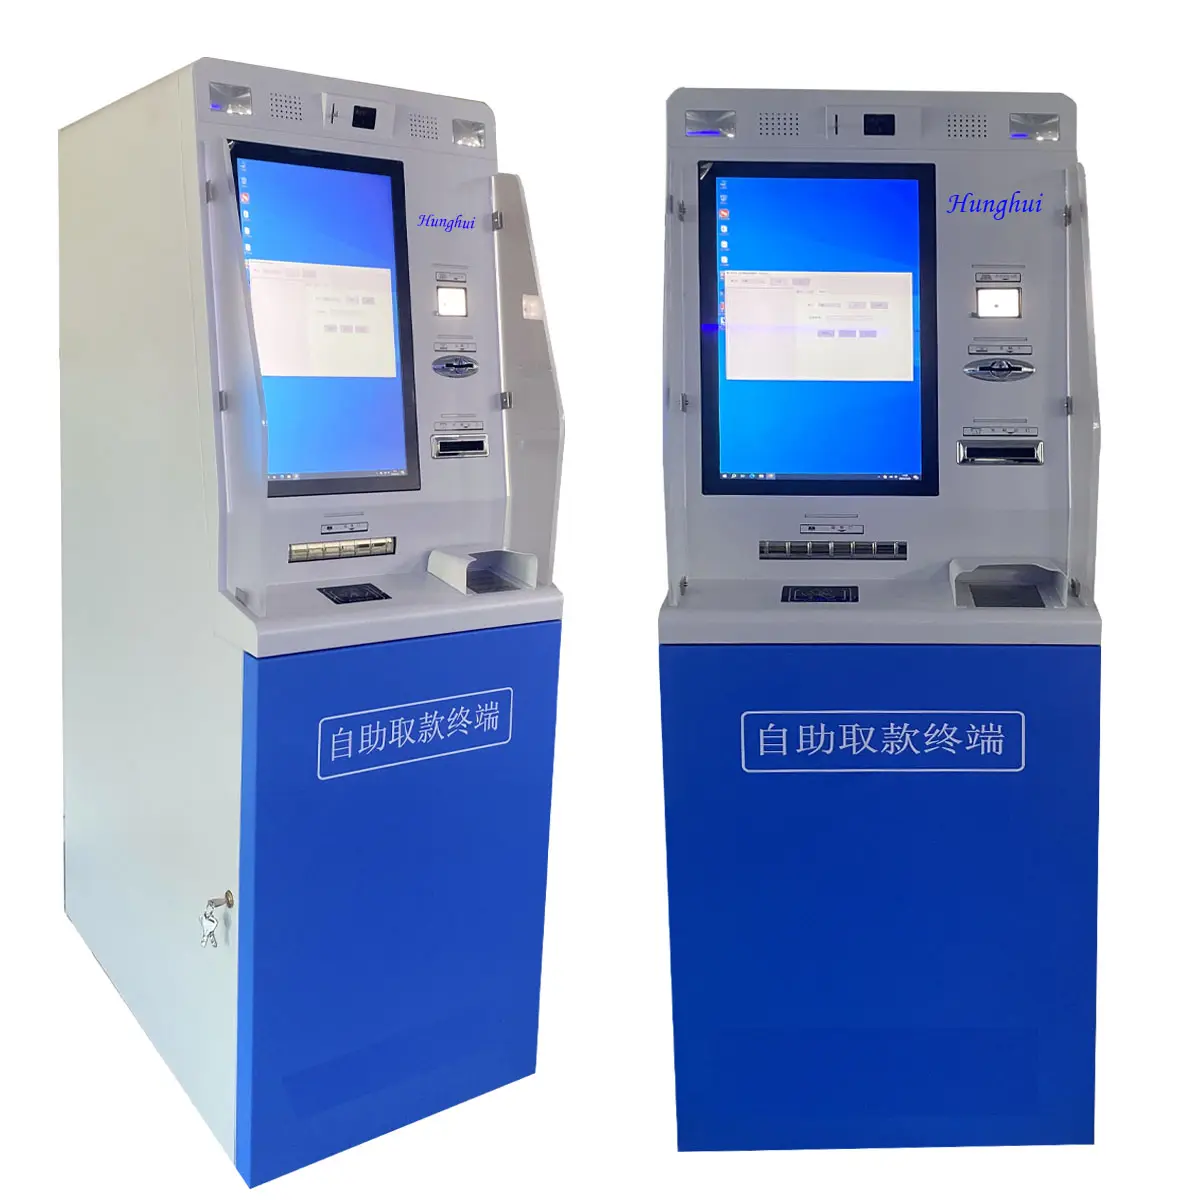 ماكينة السحب الآلي ATM بالخدمة الذاتية من خلال خدمة الدفع النقدي التلقائي